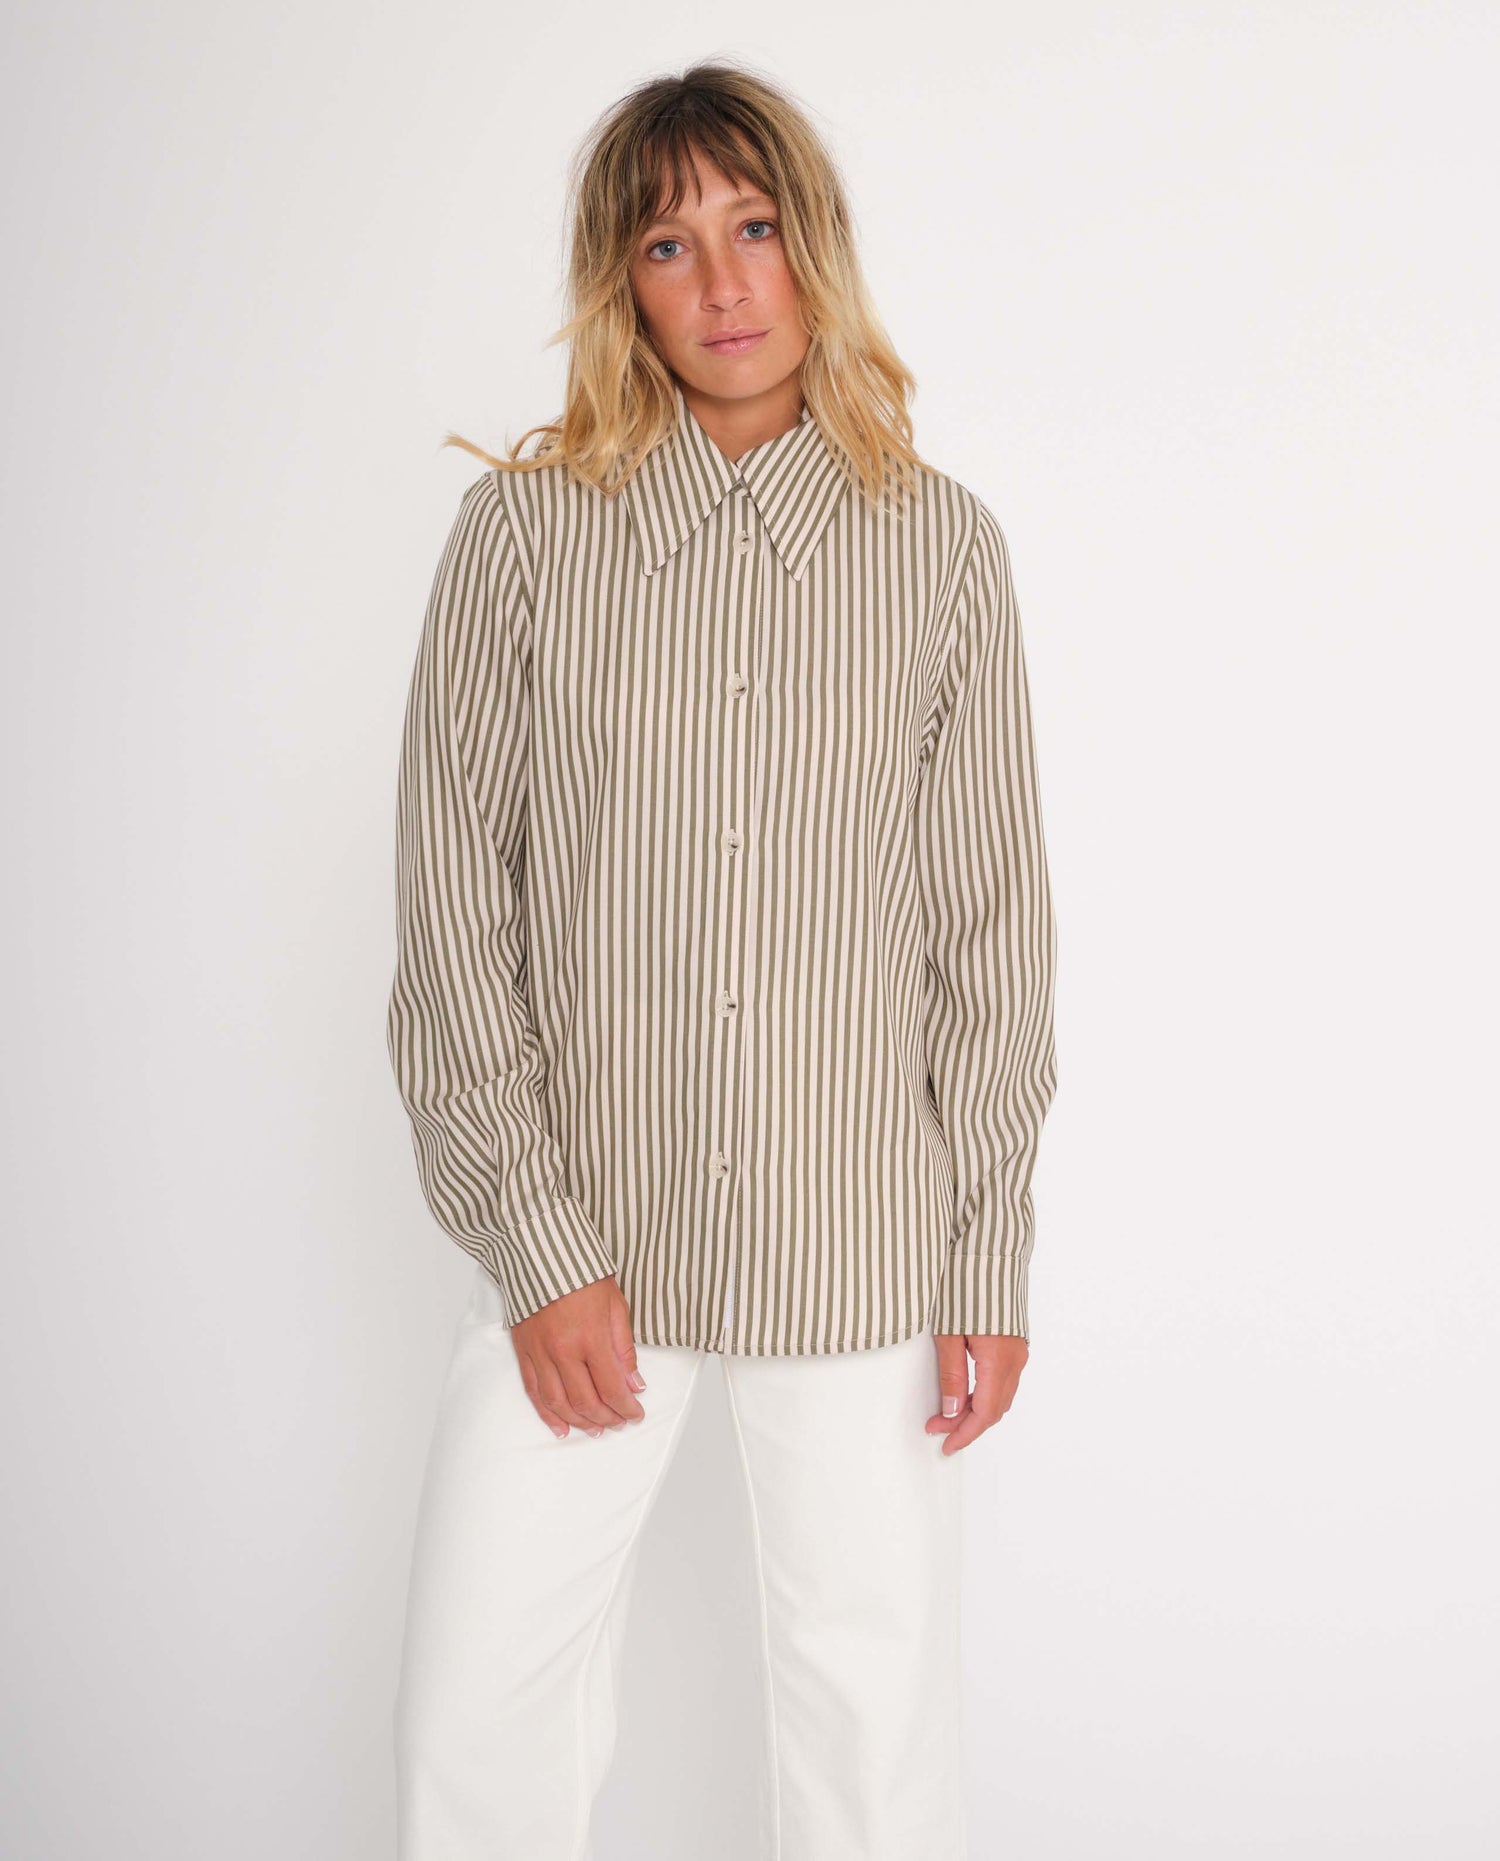 marché commun rotholz femme chemise col italien tencel rayures kaki sable